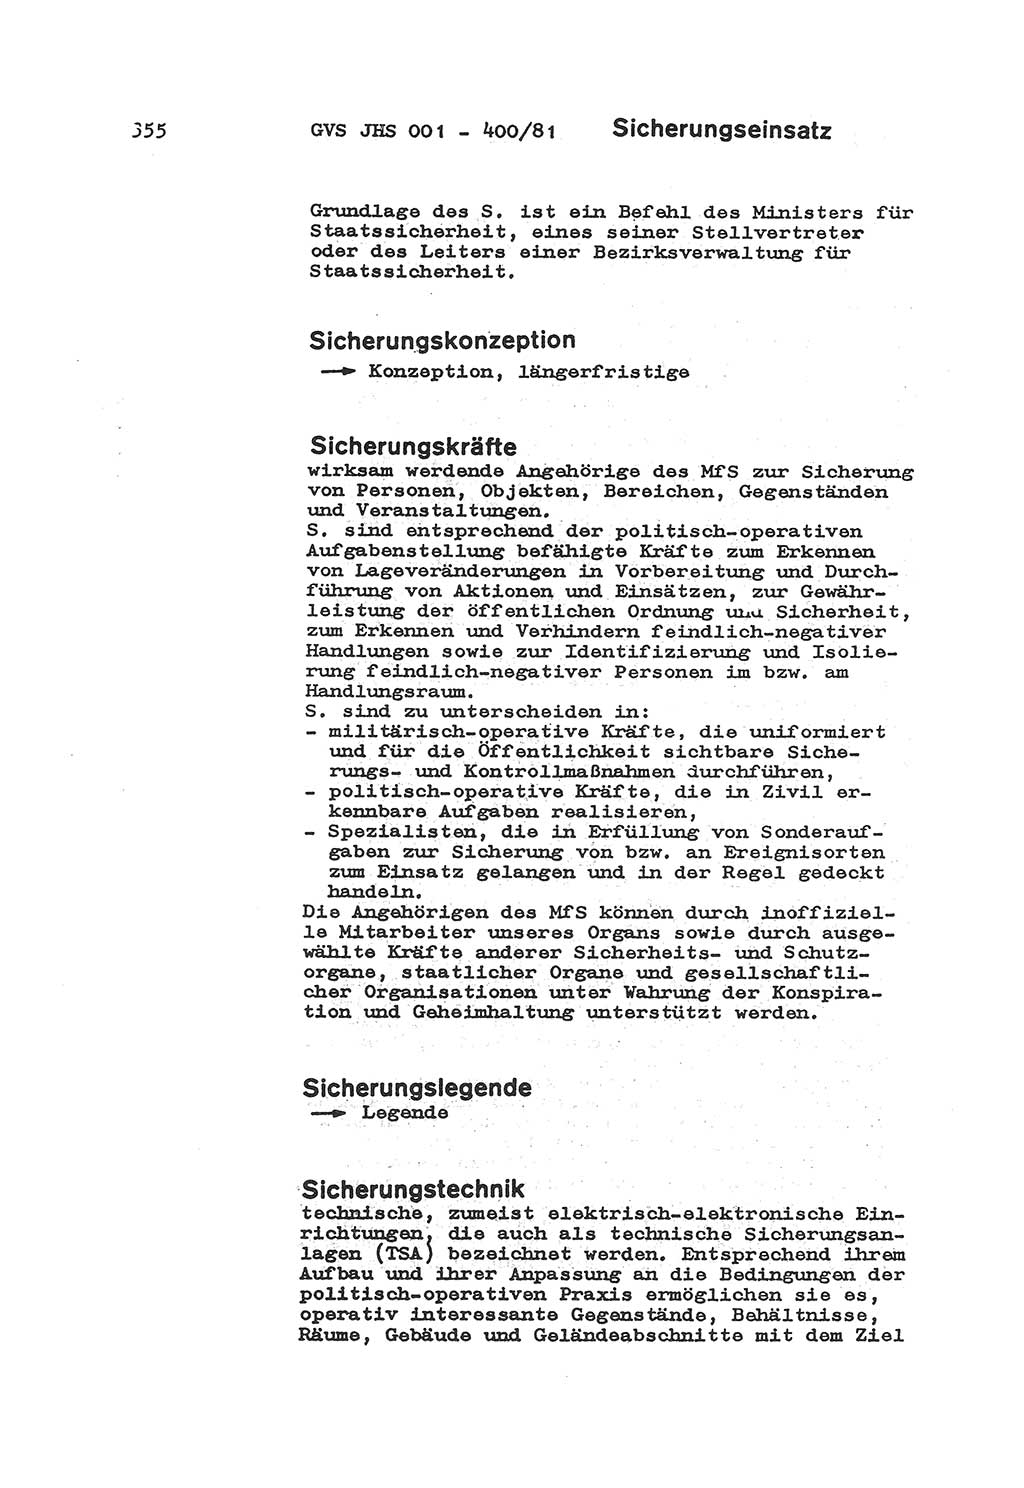 Wörterbuch der politisch-operativen Arbeit, Ministerium für Staatssicherheit (MfS) [Deutsche Demokratische Republik (DDR)], Juristische Hochschule (JHS), Geheime Verschlußsache (GVS) o001-400/81, Potsdam 1985, Blatt 355 (Wb. pol.-op. Arb. MfS DDR JHS GVS o001-400/81 1985, Bl. 355)